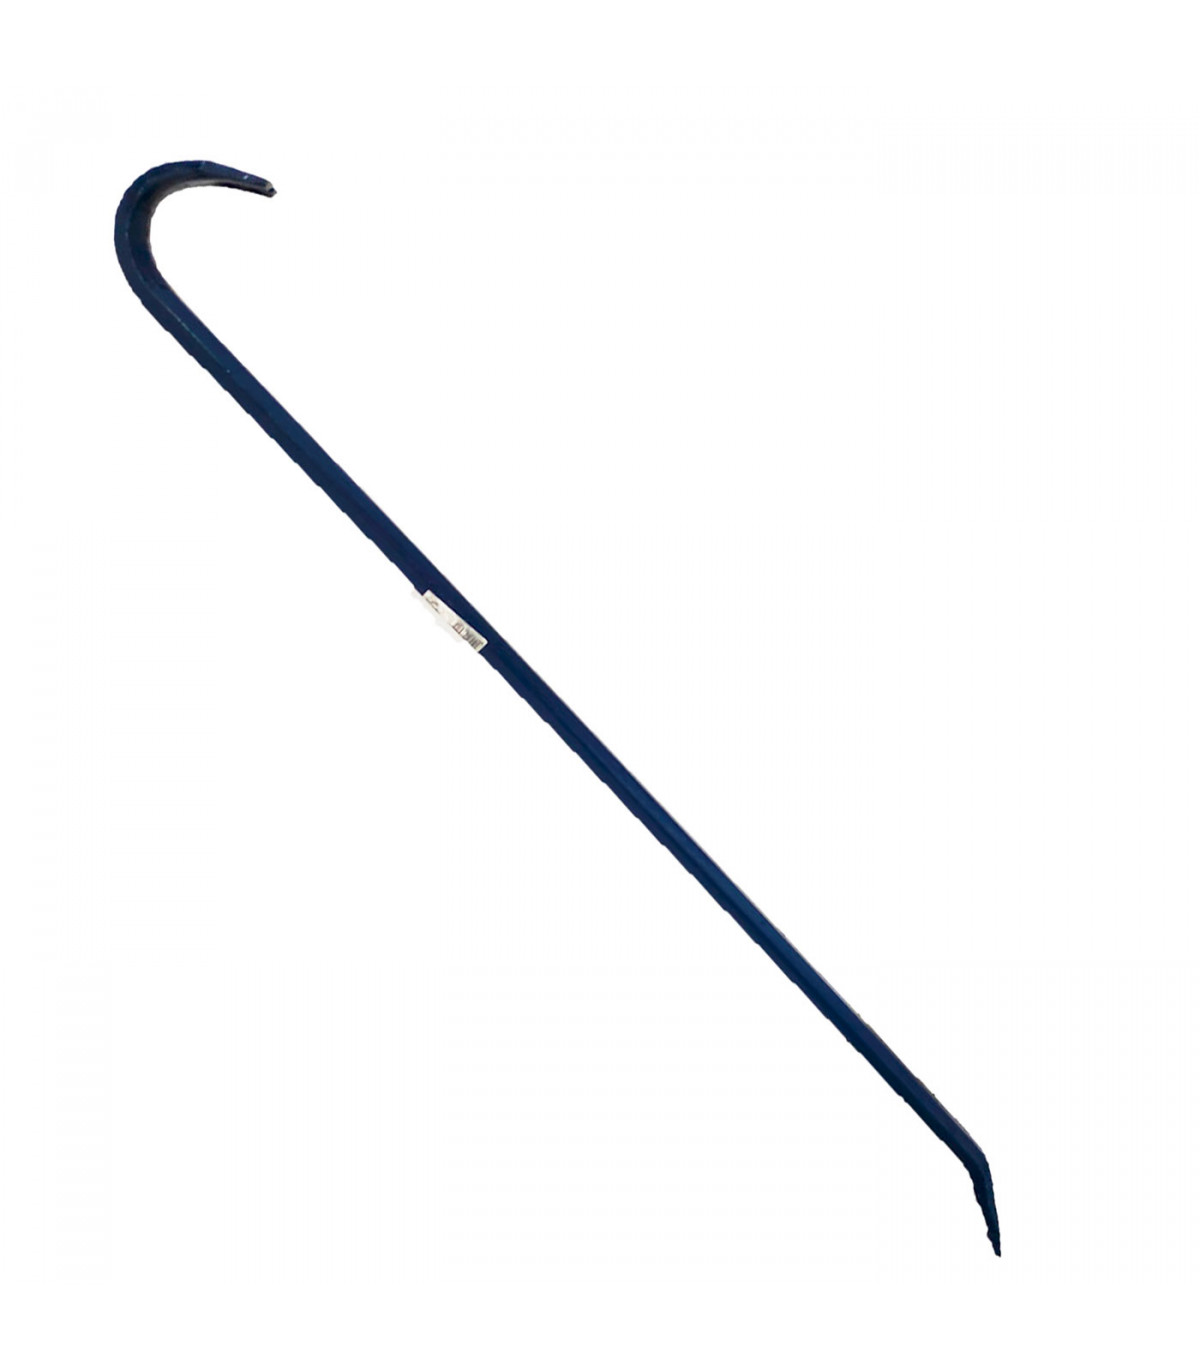 Tradineur - Pata de cabra de hierro 60 cm de longitud, palanca de  encofrador, pie de cabra, quitaclavos, herramienta sacaclavos